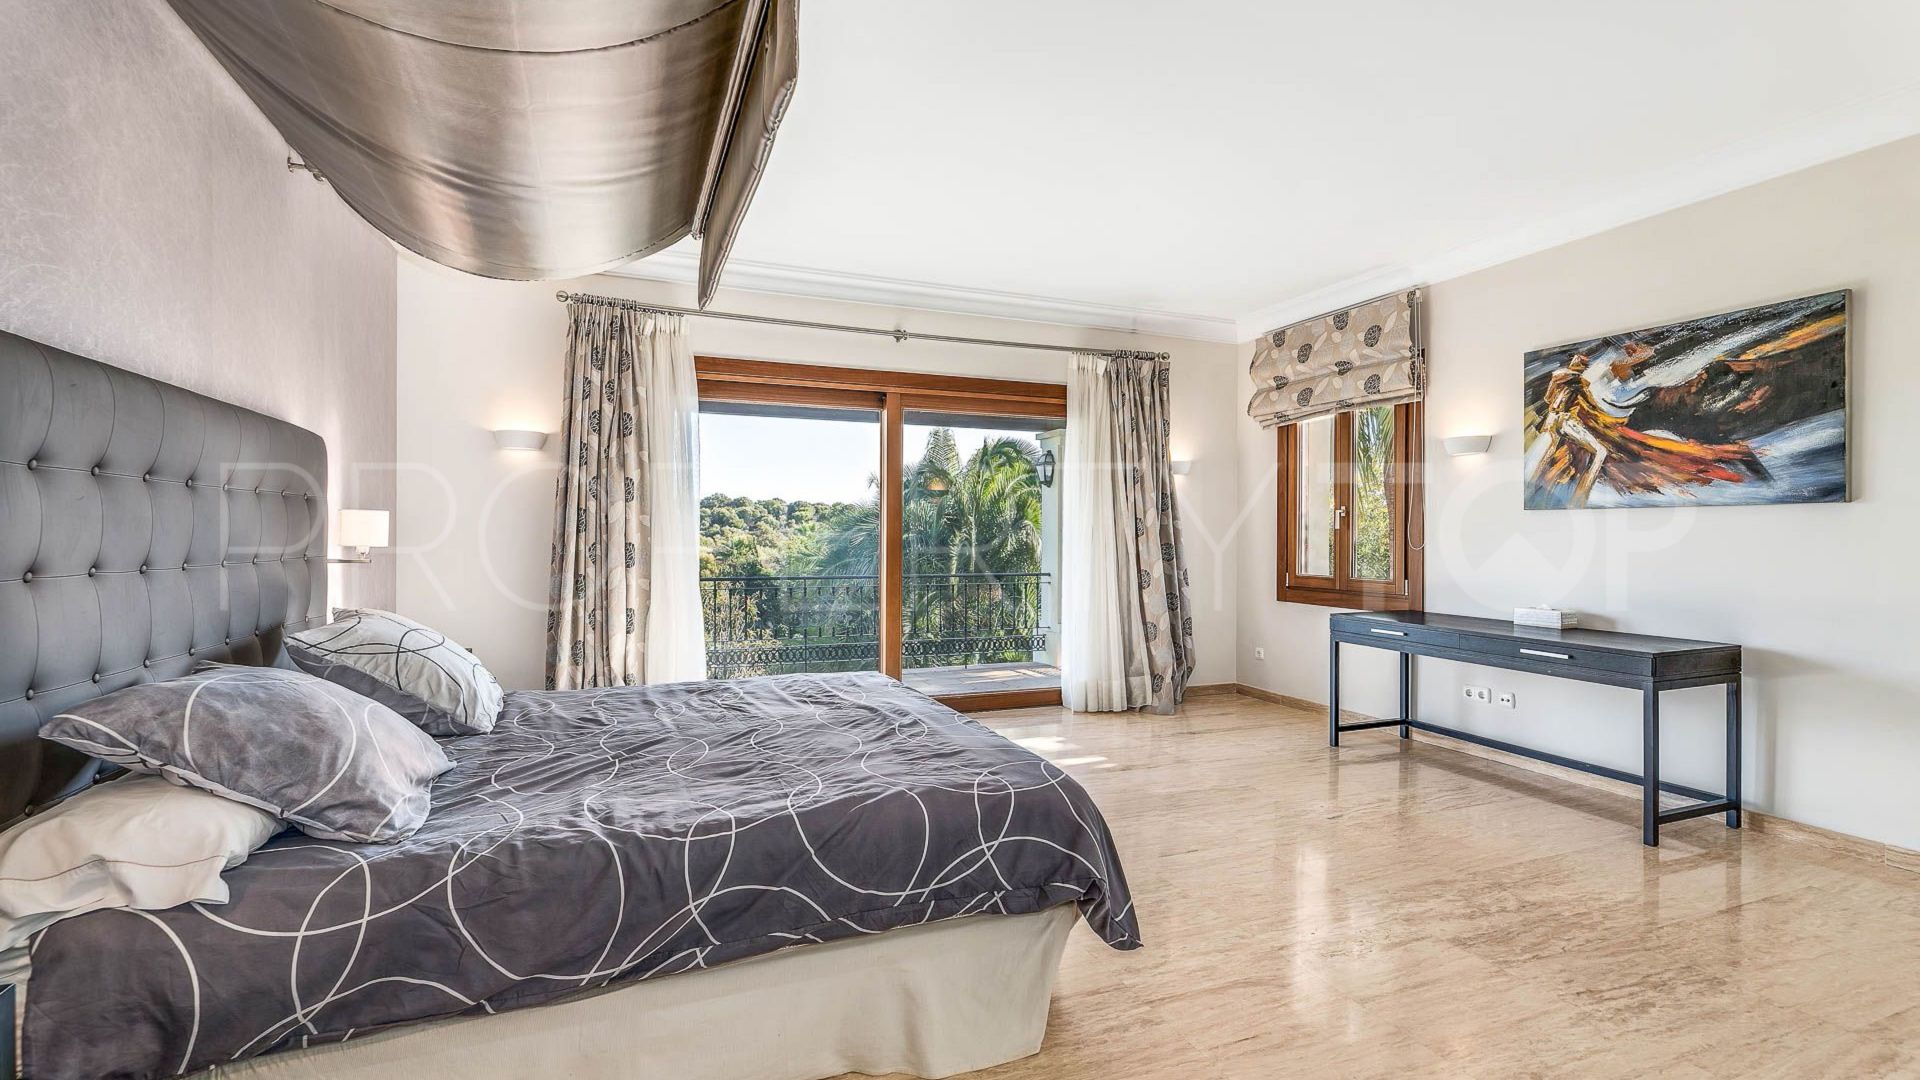 16 bedrooms villa in Altos del Paraiso for sale